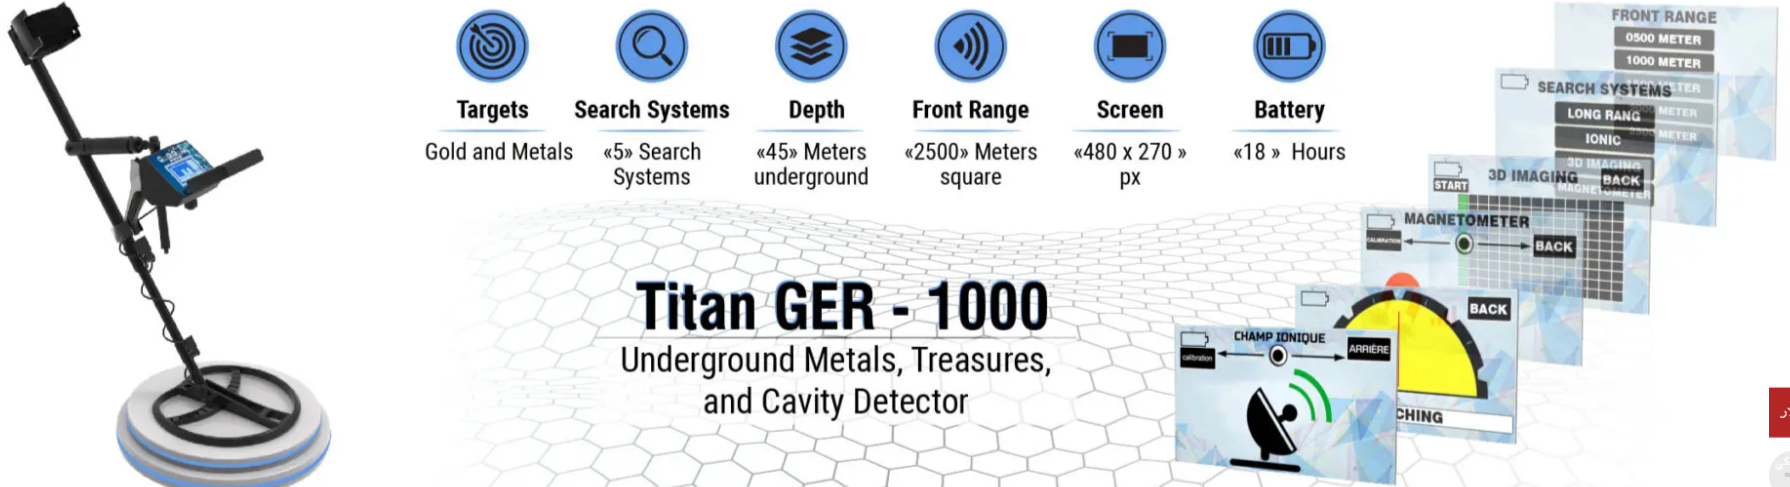 جهاز كشف الذهب تيتان جير 1000 Do